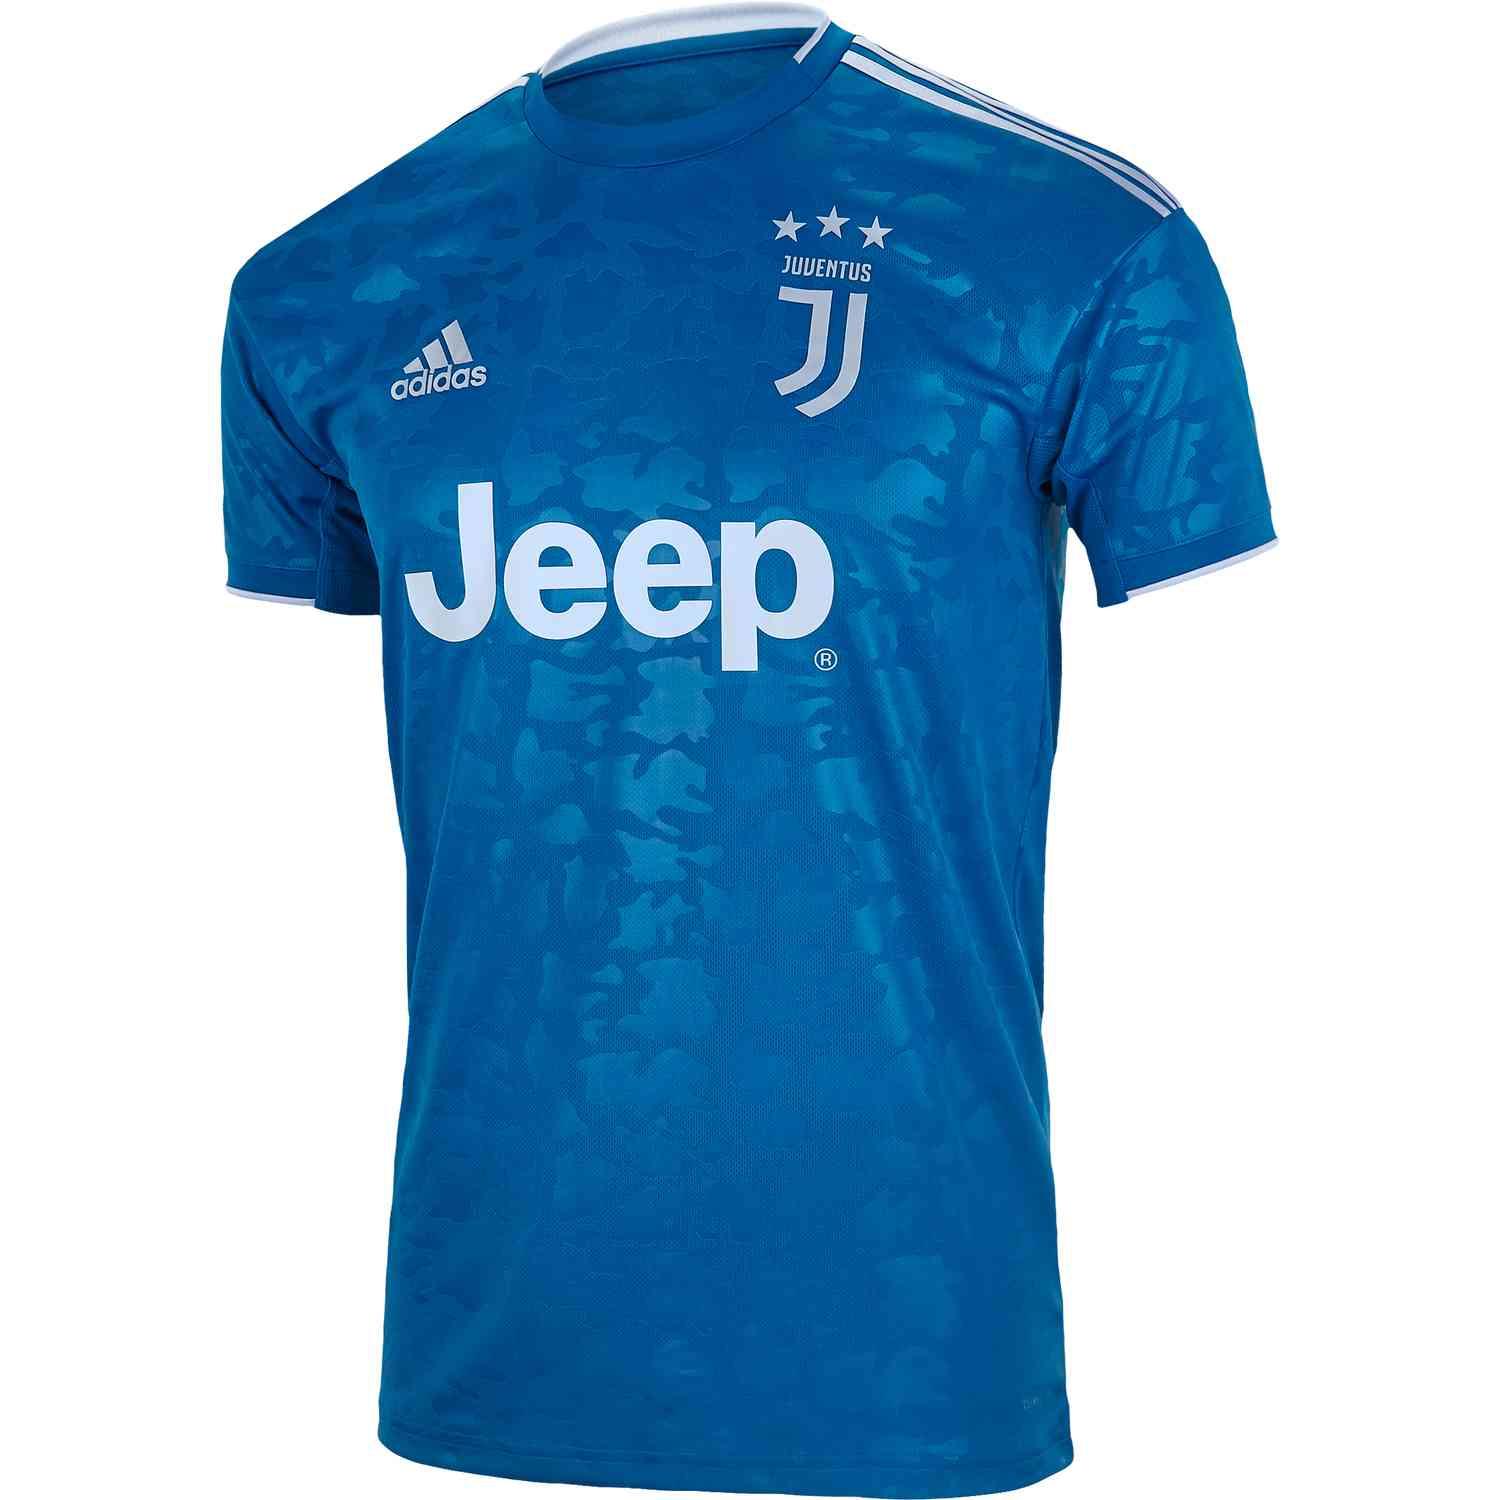 Adidas Juventus Third Jersey 2019/2020